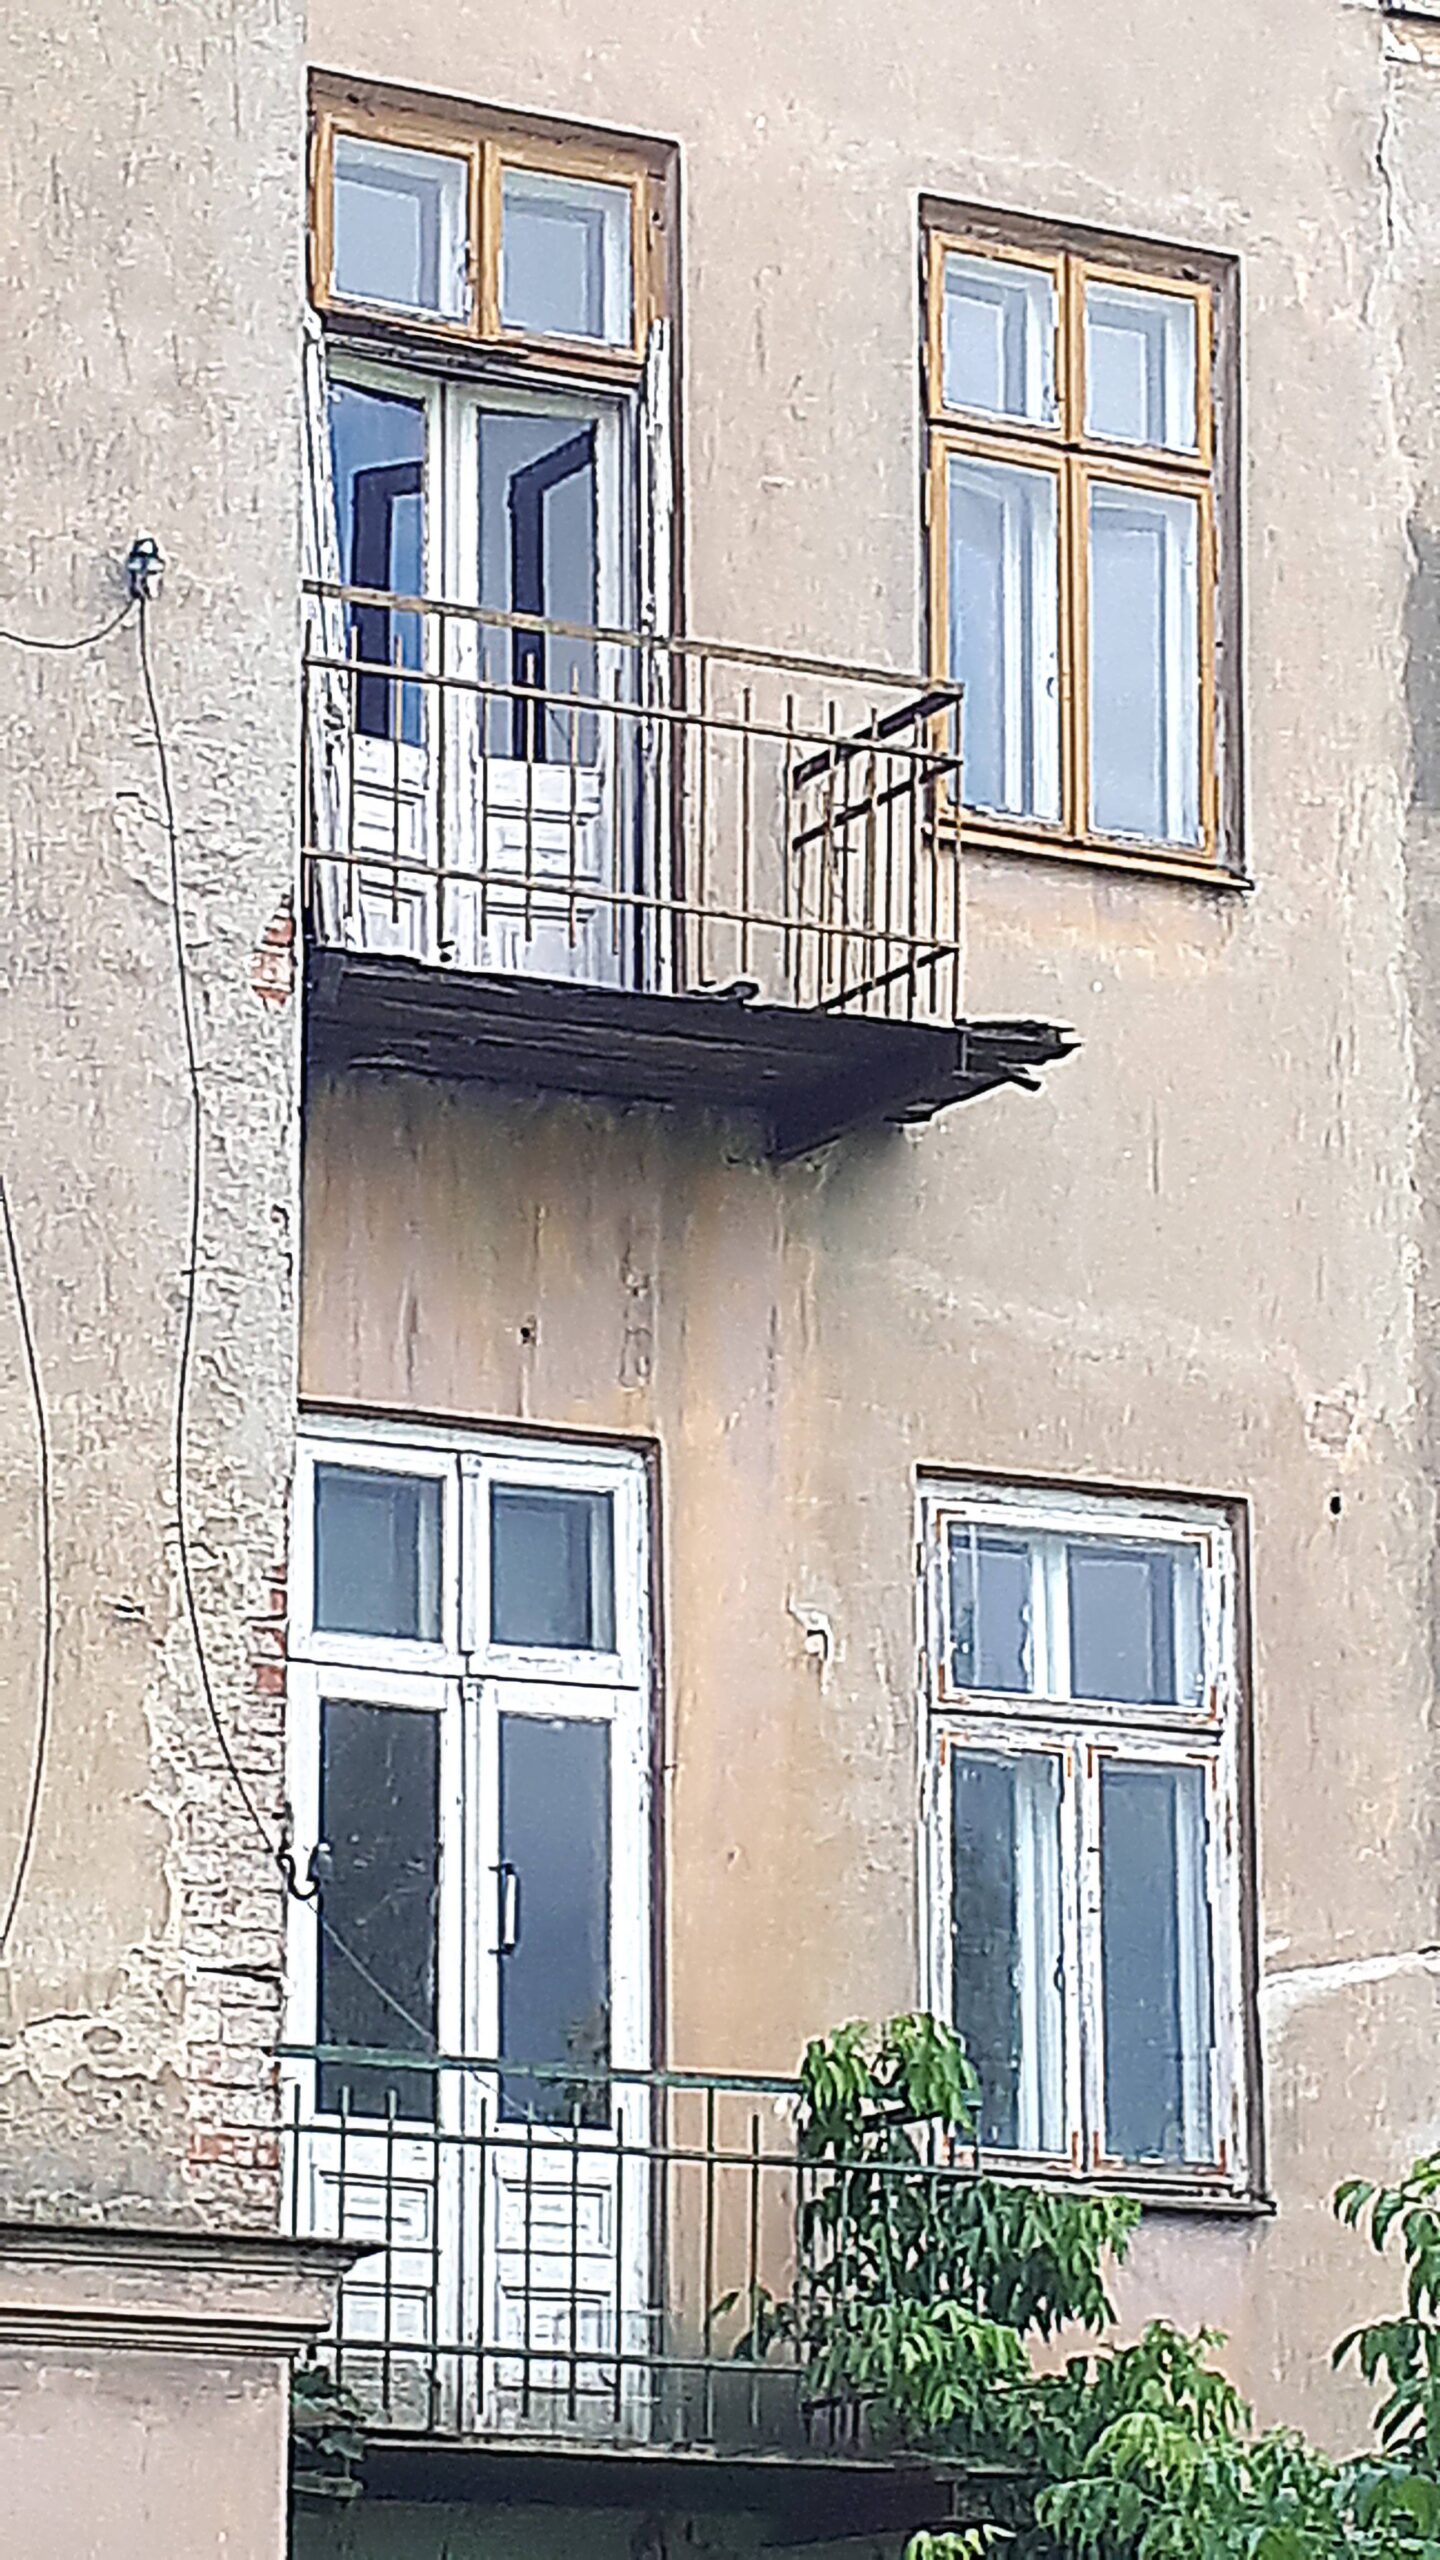 Elewacja tylna. Balkony I i II piętra. Fot. Robert Marcinkowski 2022 r., źródło: Res in Ornamento II.